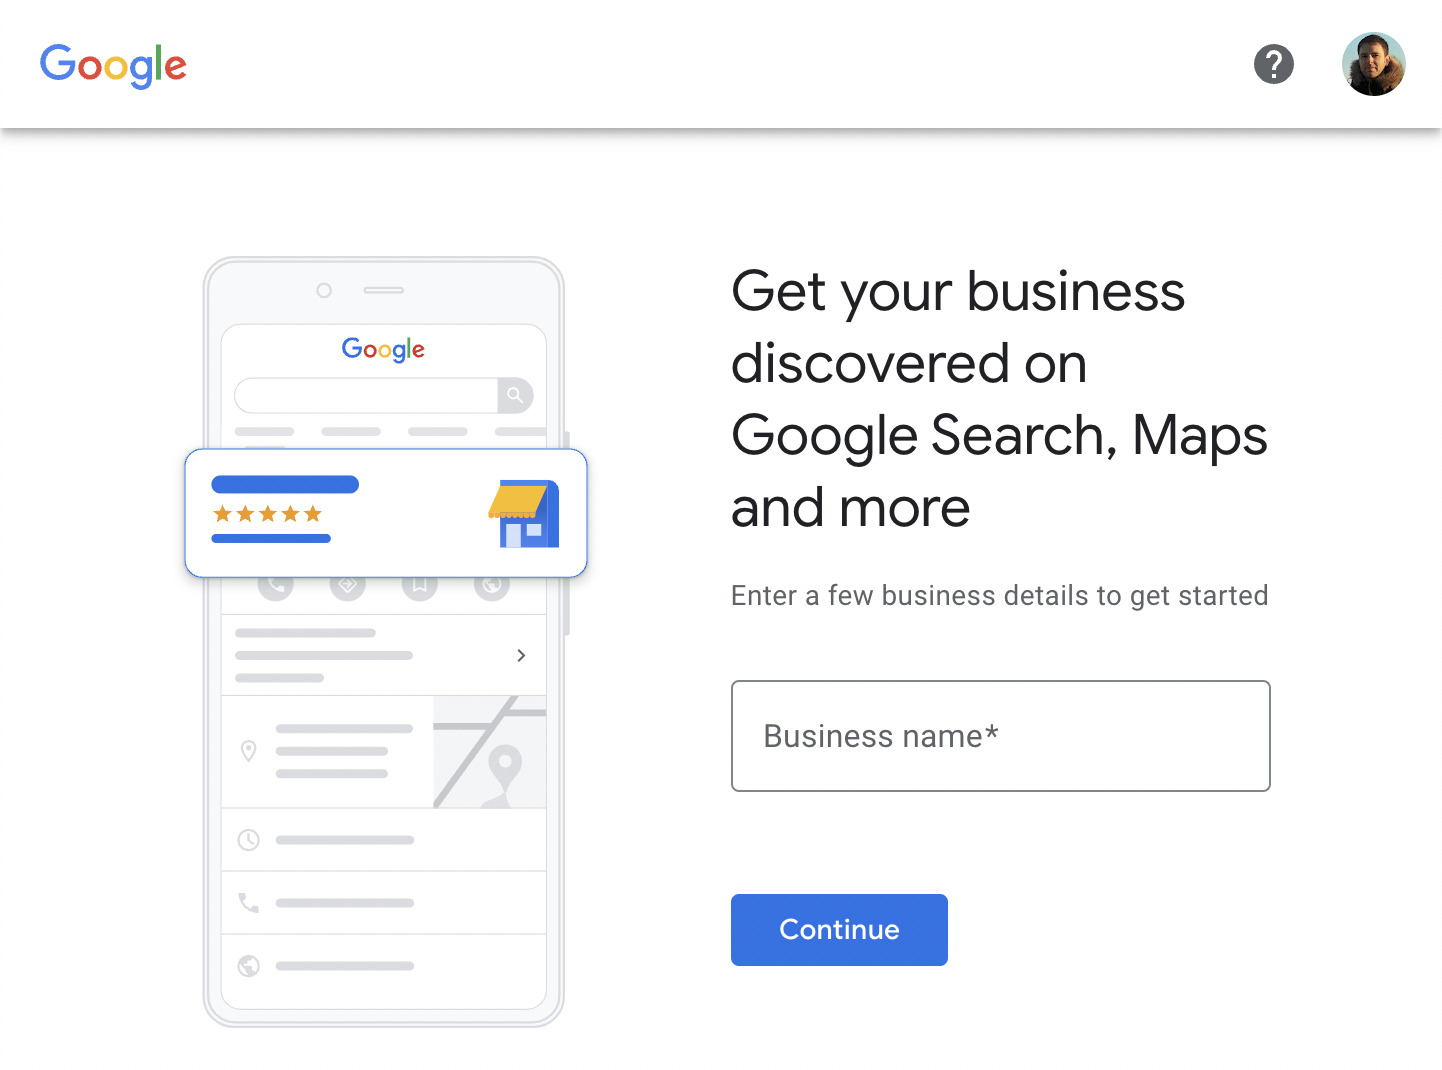 صفحه شروع کسب و کار Google، از طریق نمایه کسب و کار Google